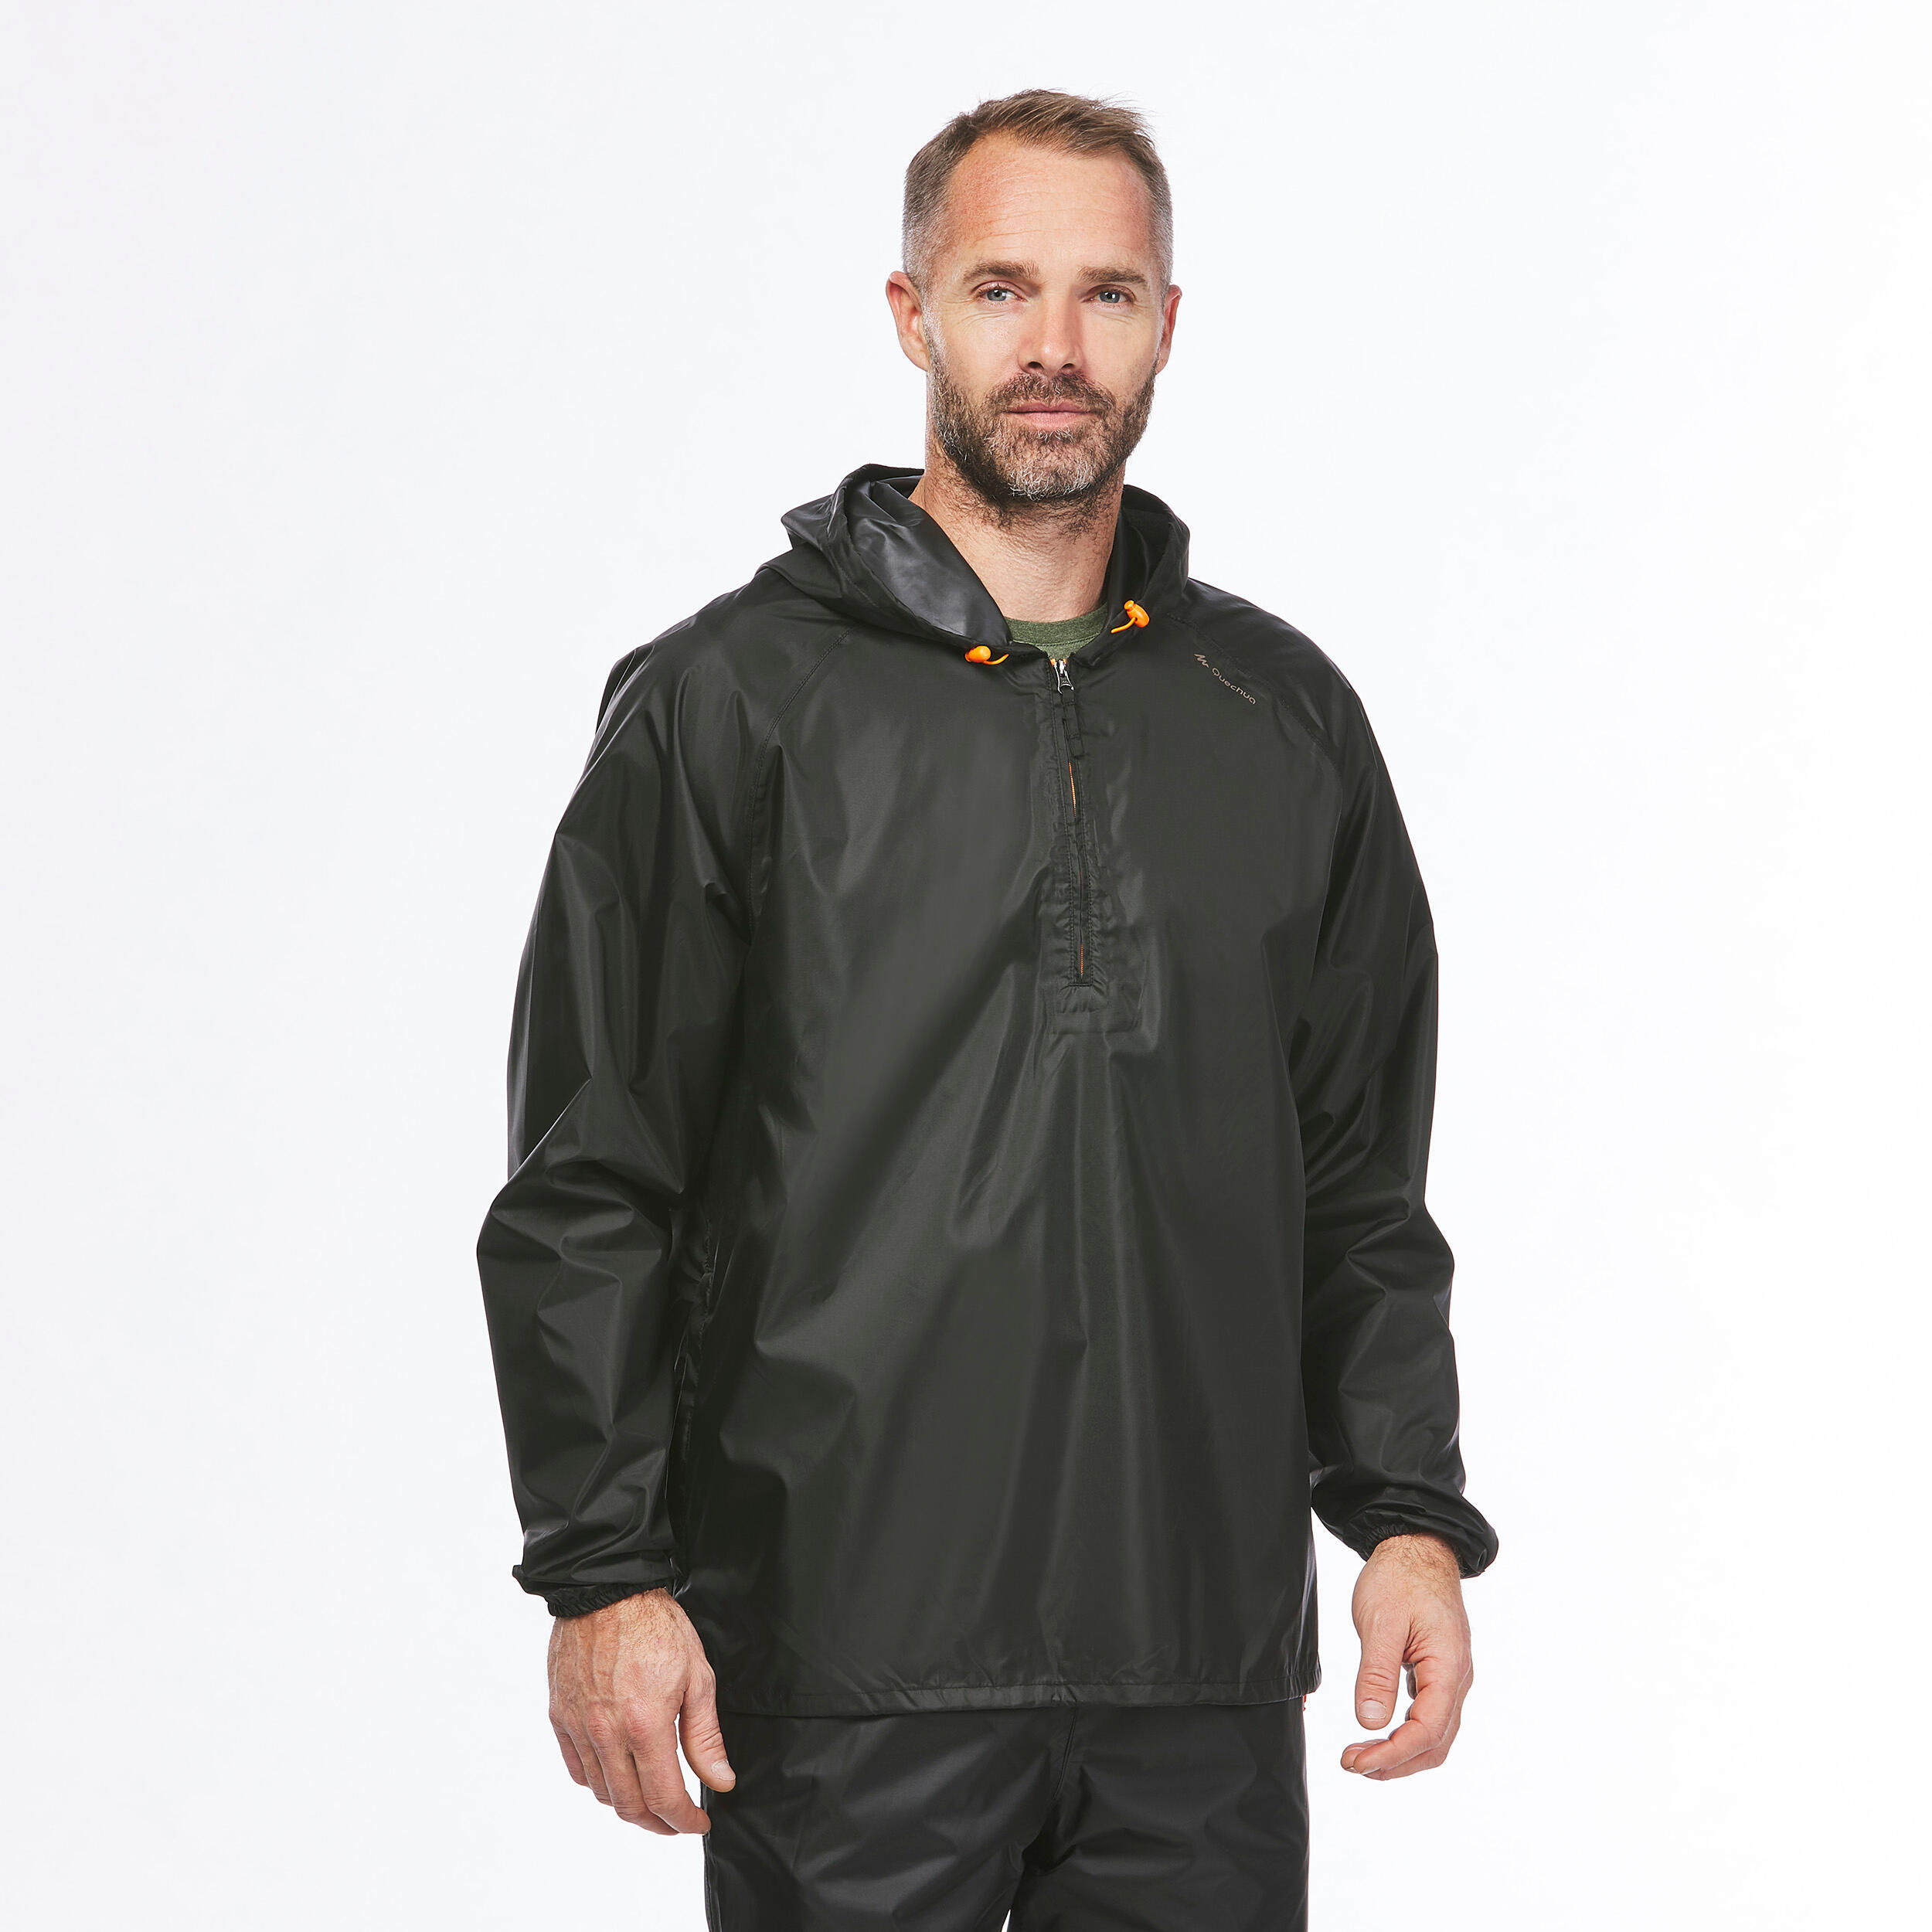 Men's Windproof and Water-repellent Hiking Jacket - Raincut 1/2 Zip 8/19